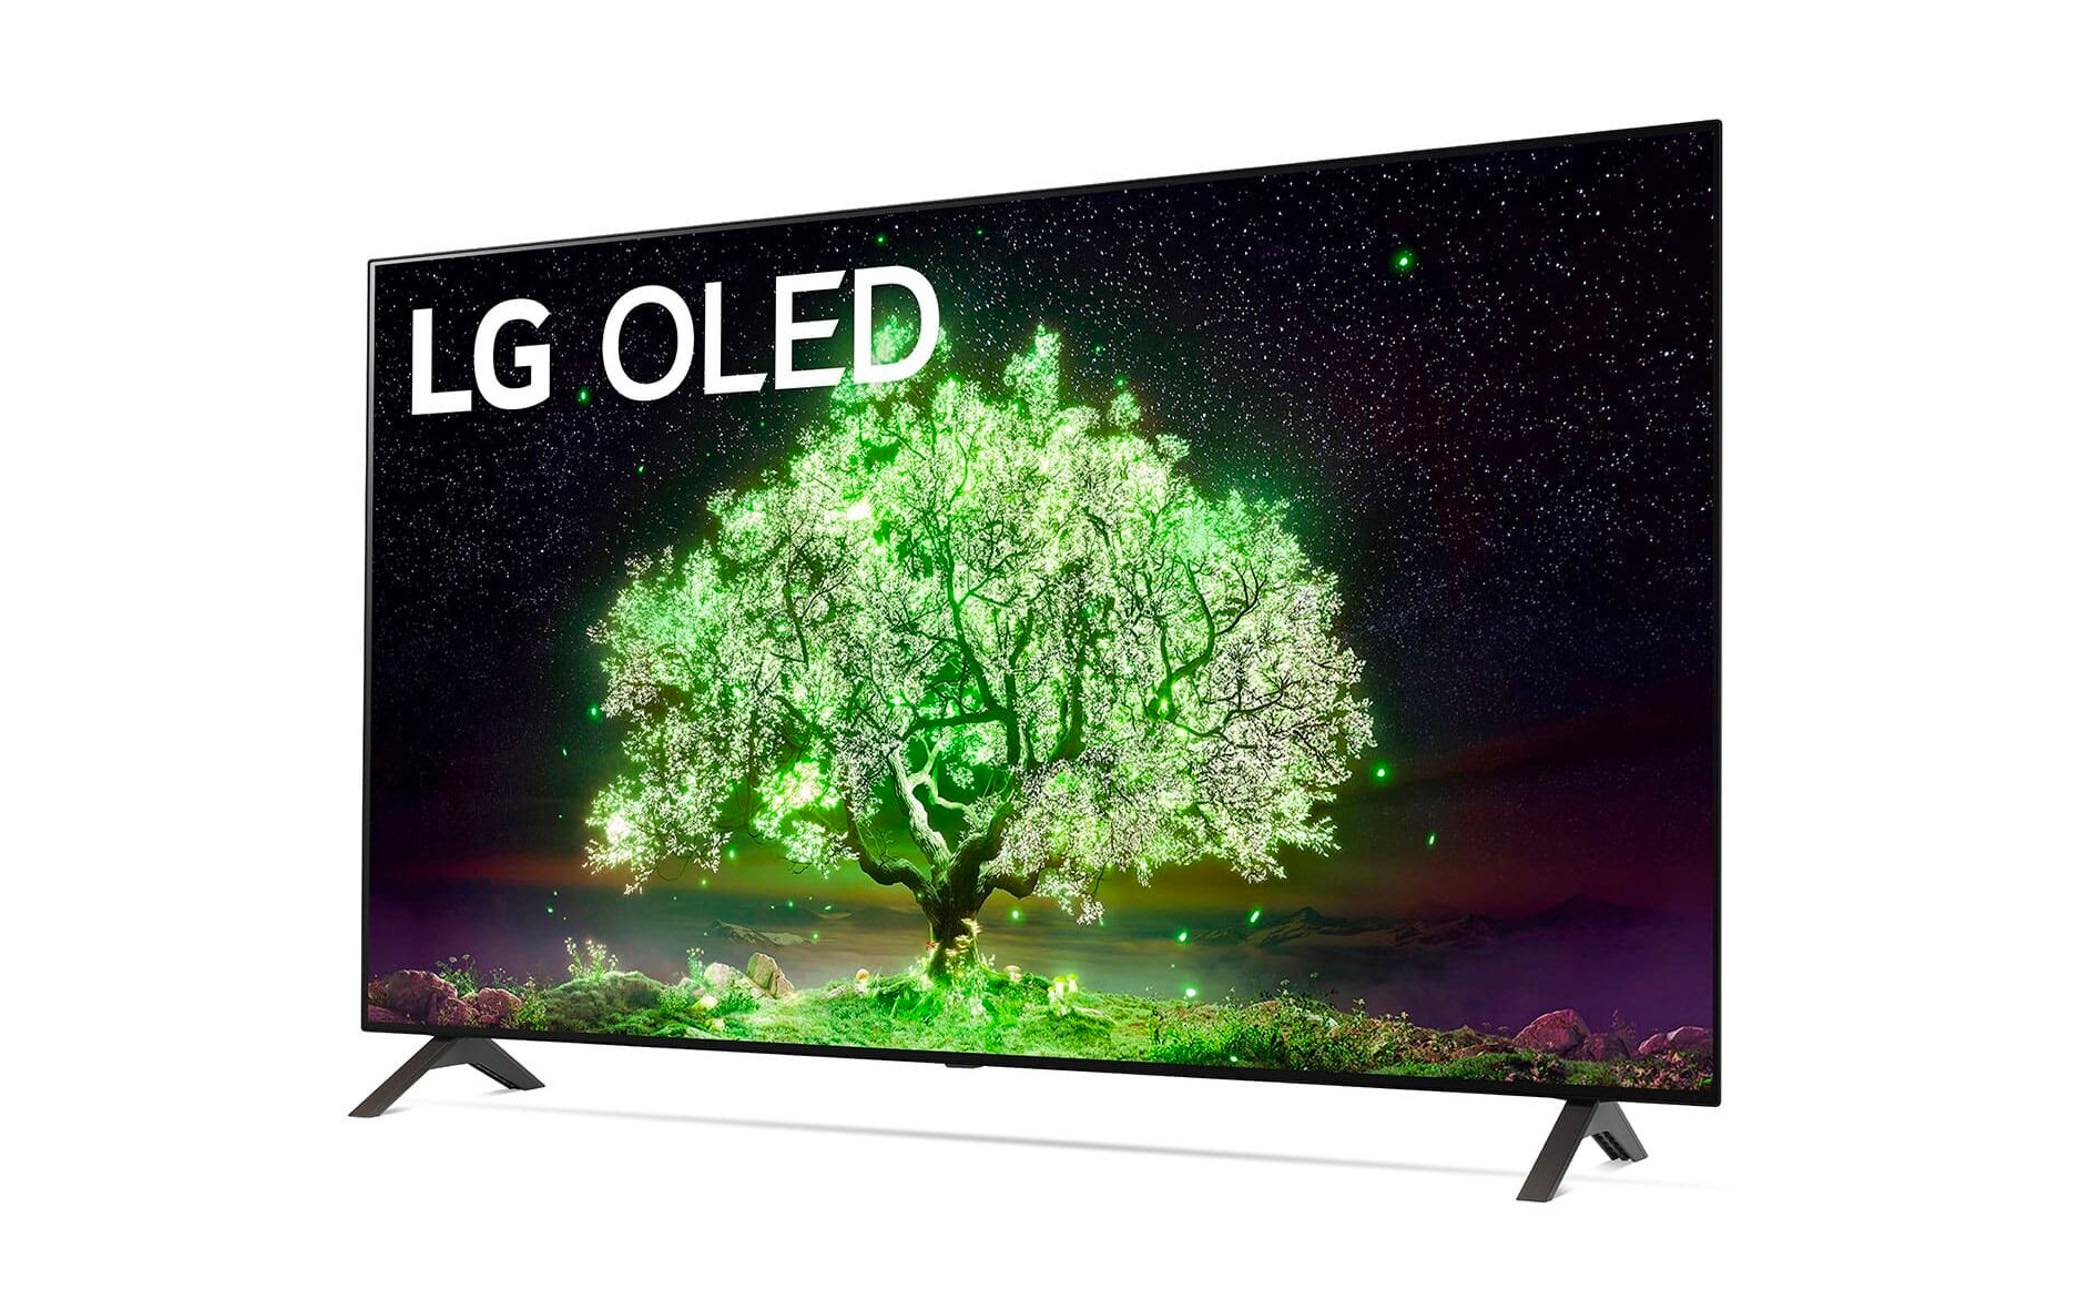 LG prijzen oled tv's en lcd tv's 2021 bekend | FWD